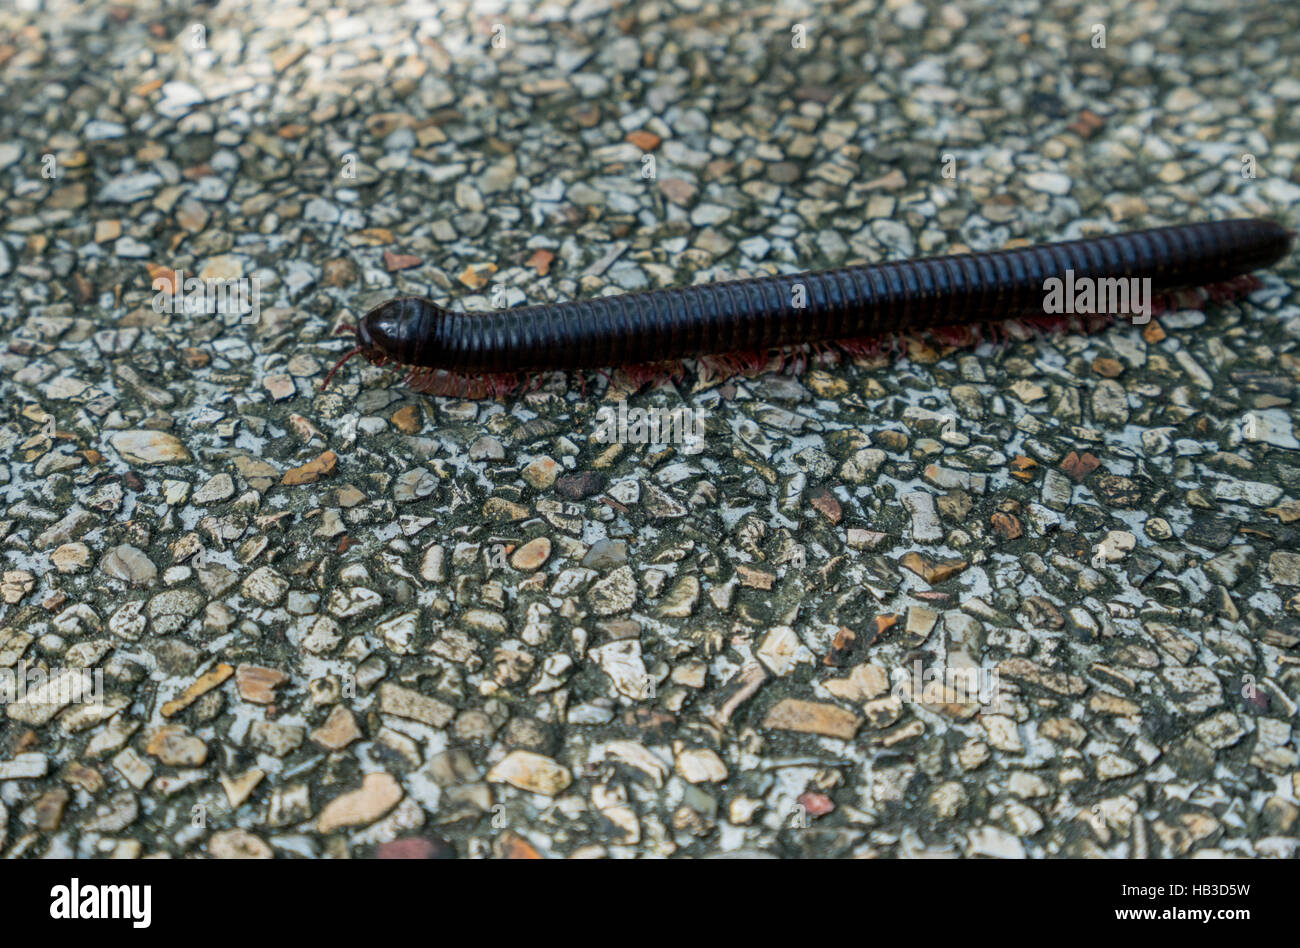 Image of centipede crawling on lane. Thailand Stock Photo